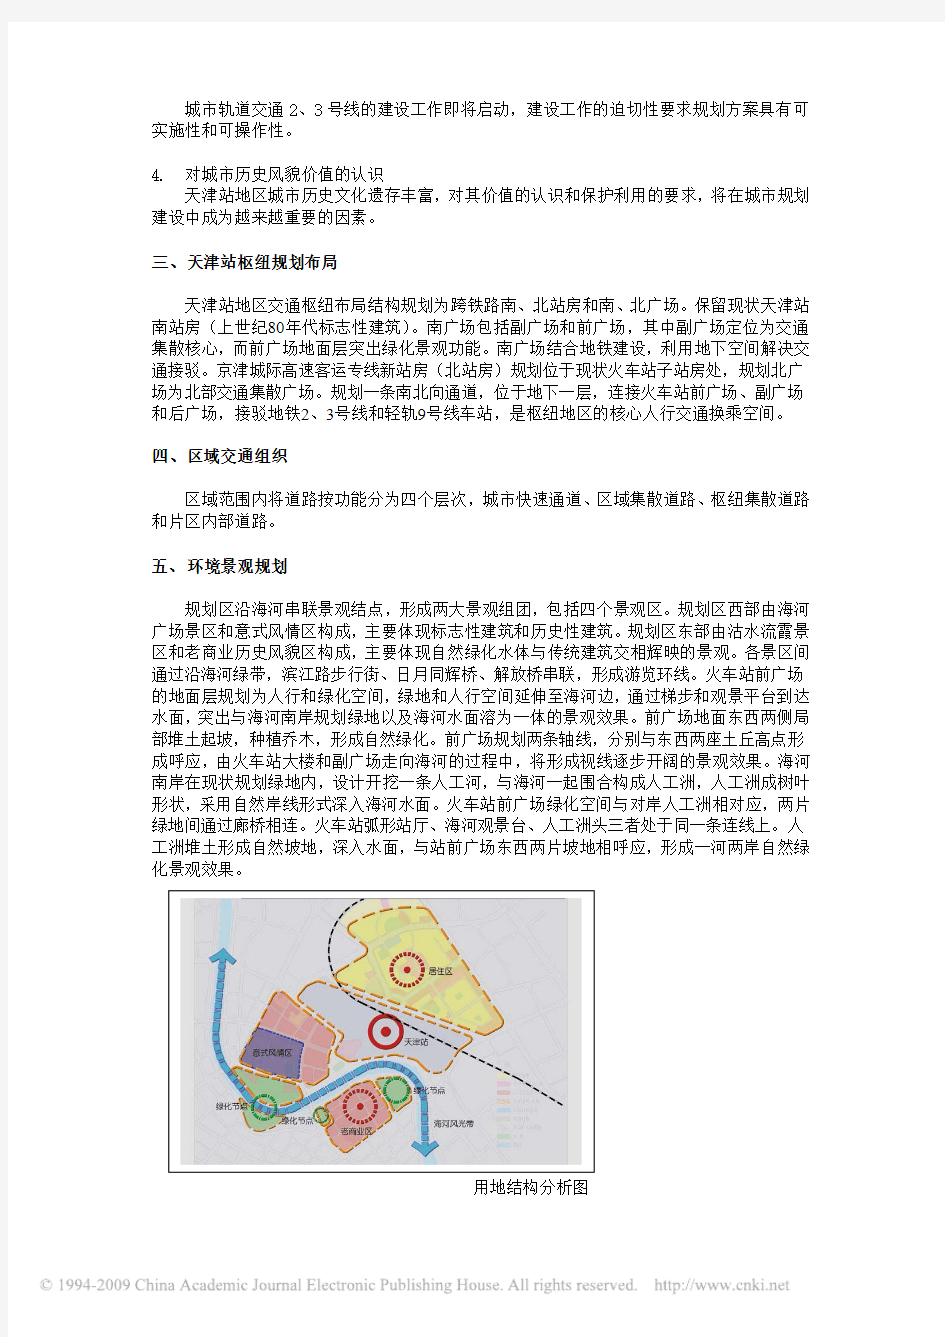 天津站地区交通枢纽及交通组织规划方案